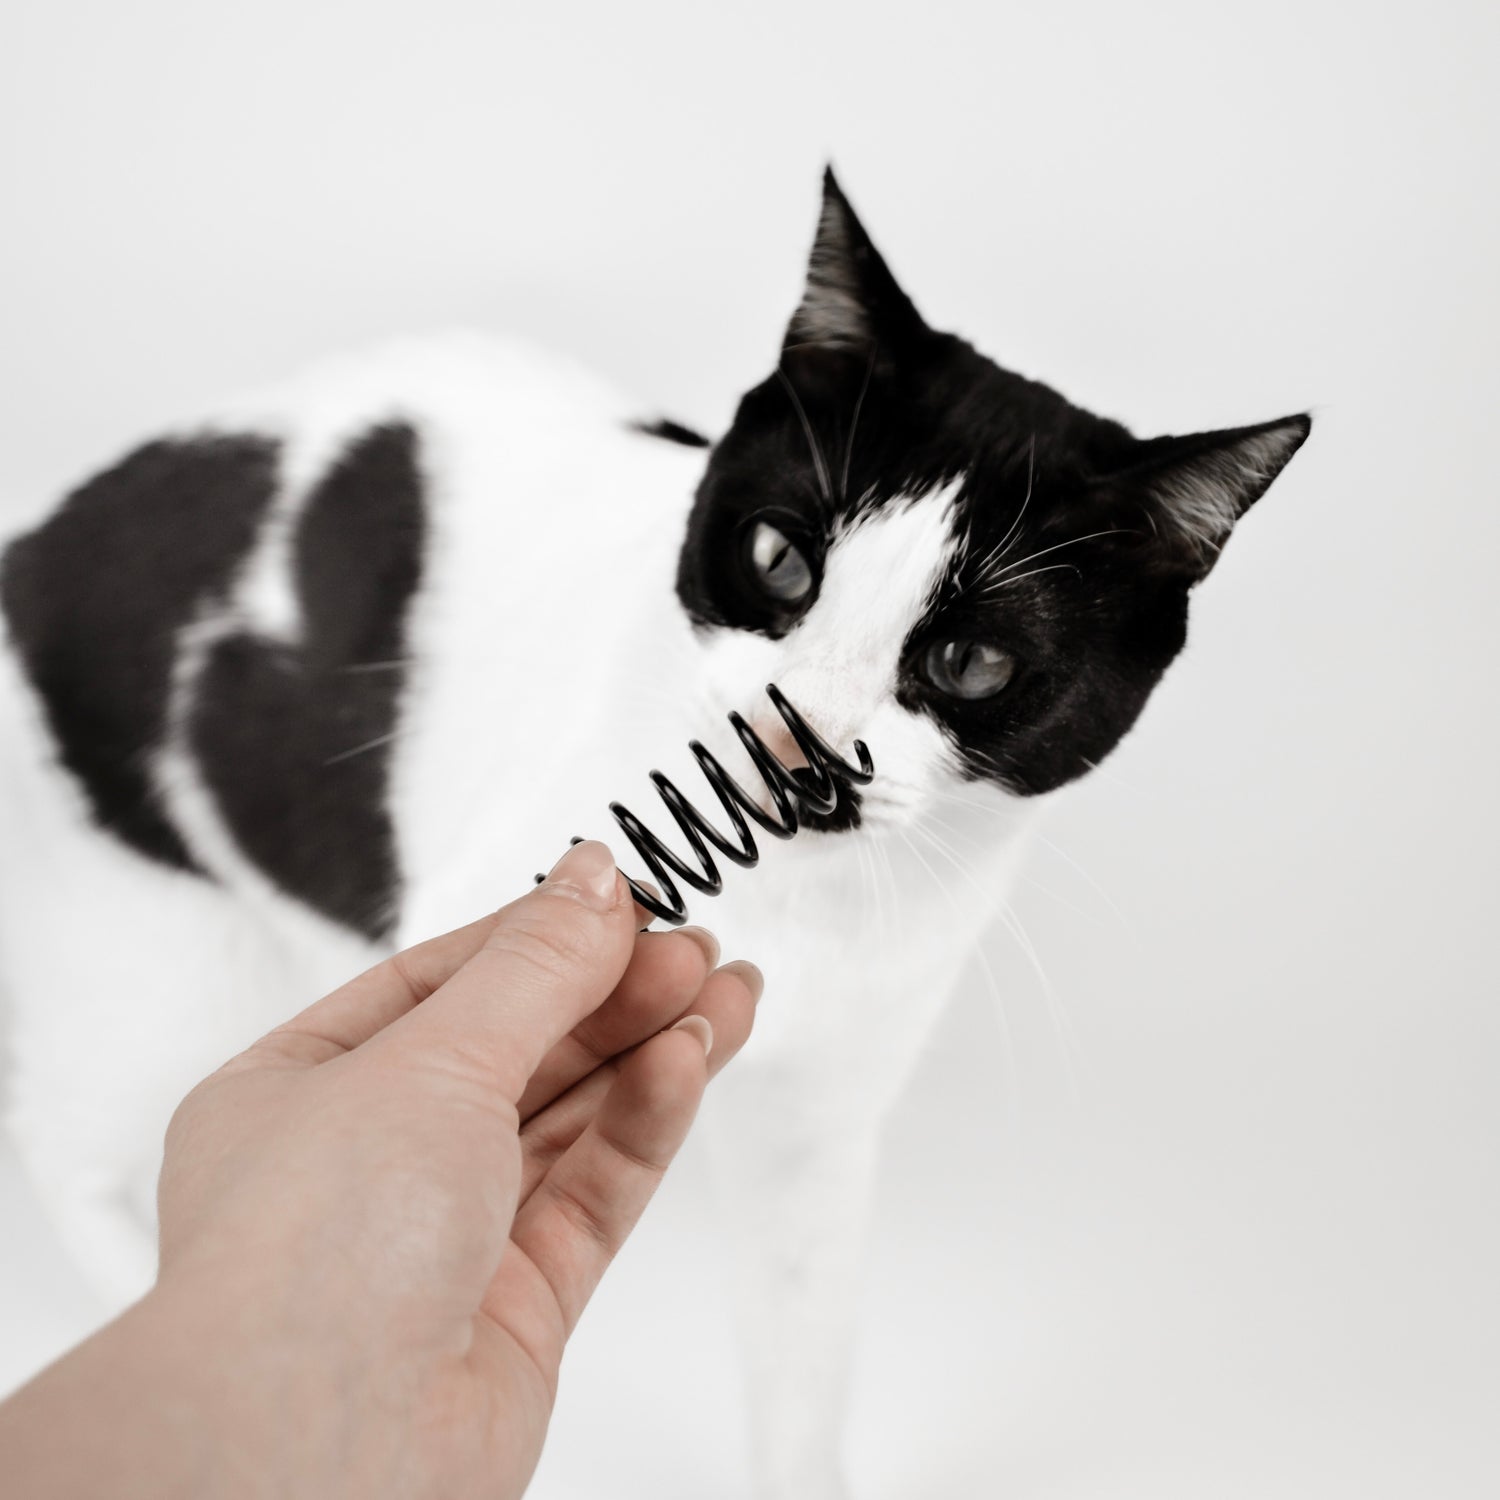 Eine Katze mit schwarz-weißem Fell schaut sich ein schwarzes Spiralen-Spielzeug, dass in eine weiblichen Hand gehalten wird, an.